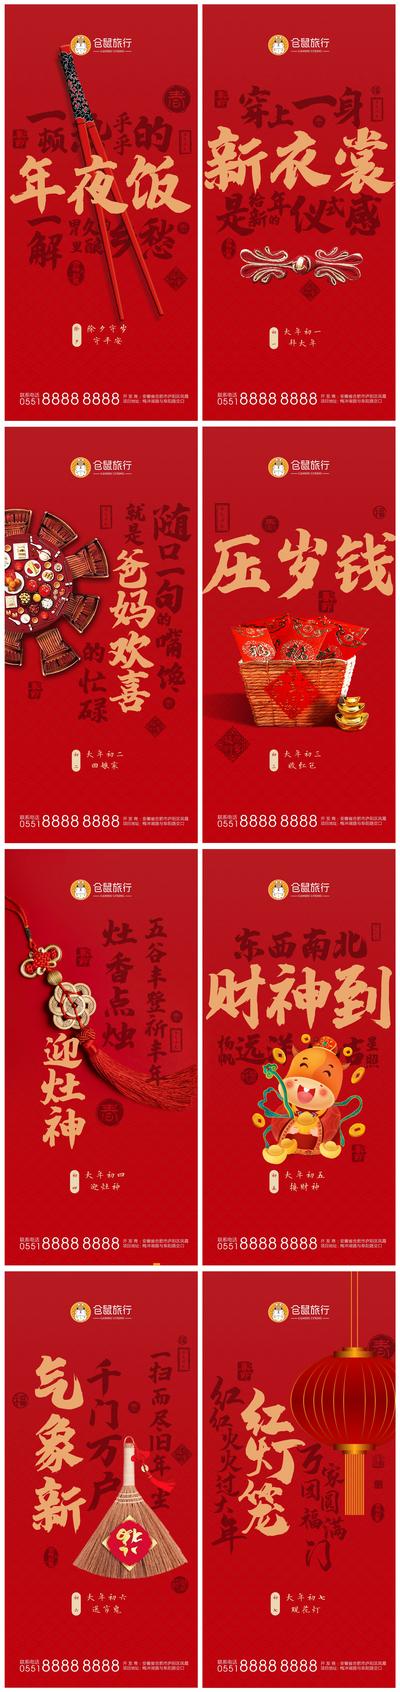 南门网 海报 中国传统节日 春节 新年 除夕 年夜饭  初一 初七 拜年 年俗 系列